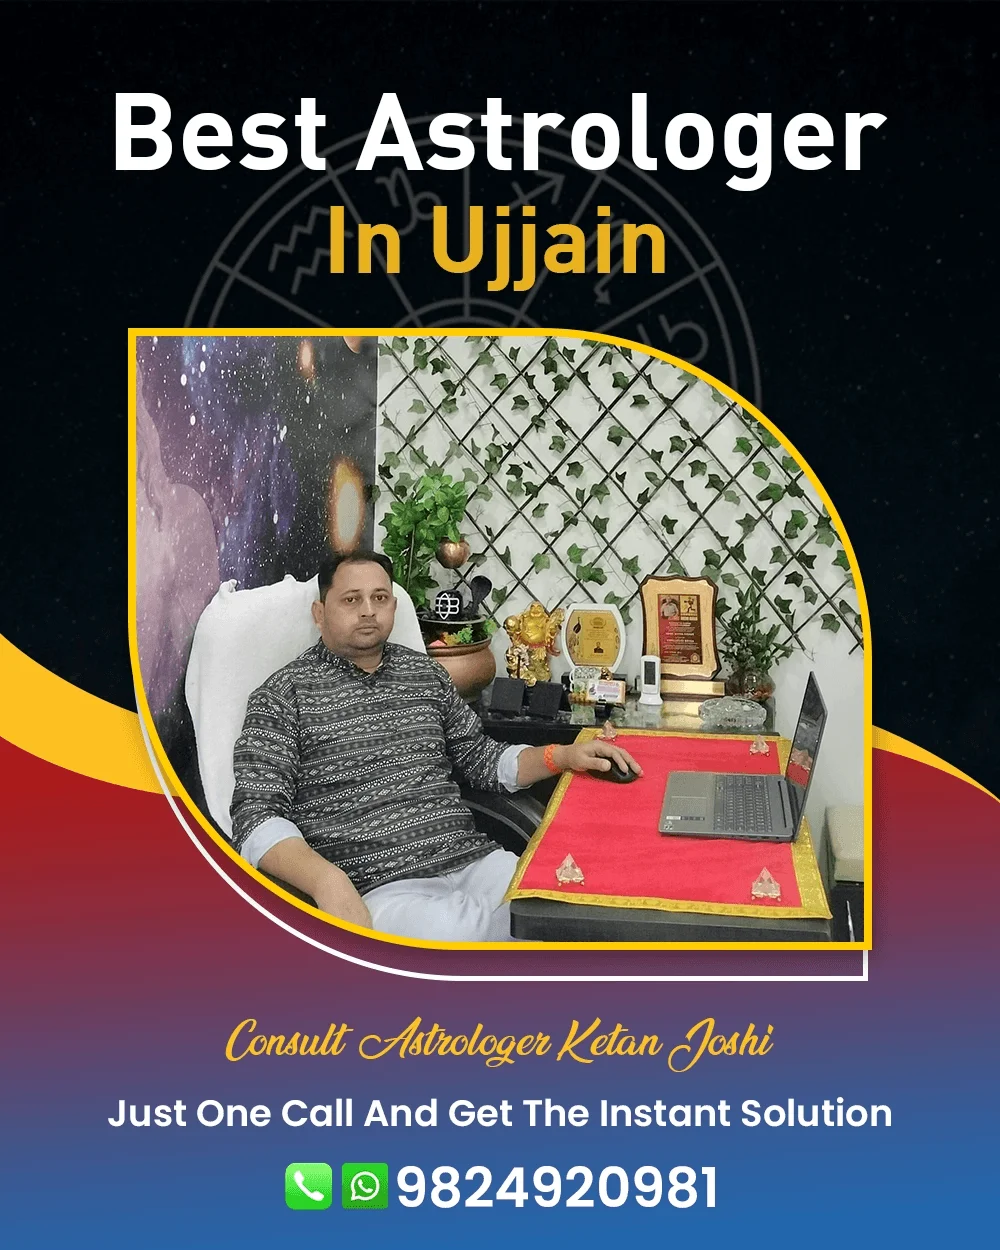 Best Astrologer In Ujjain